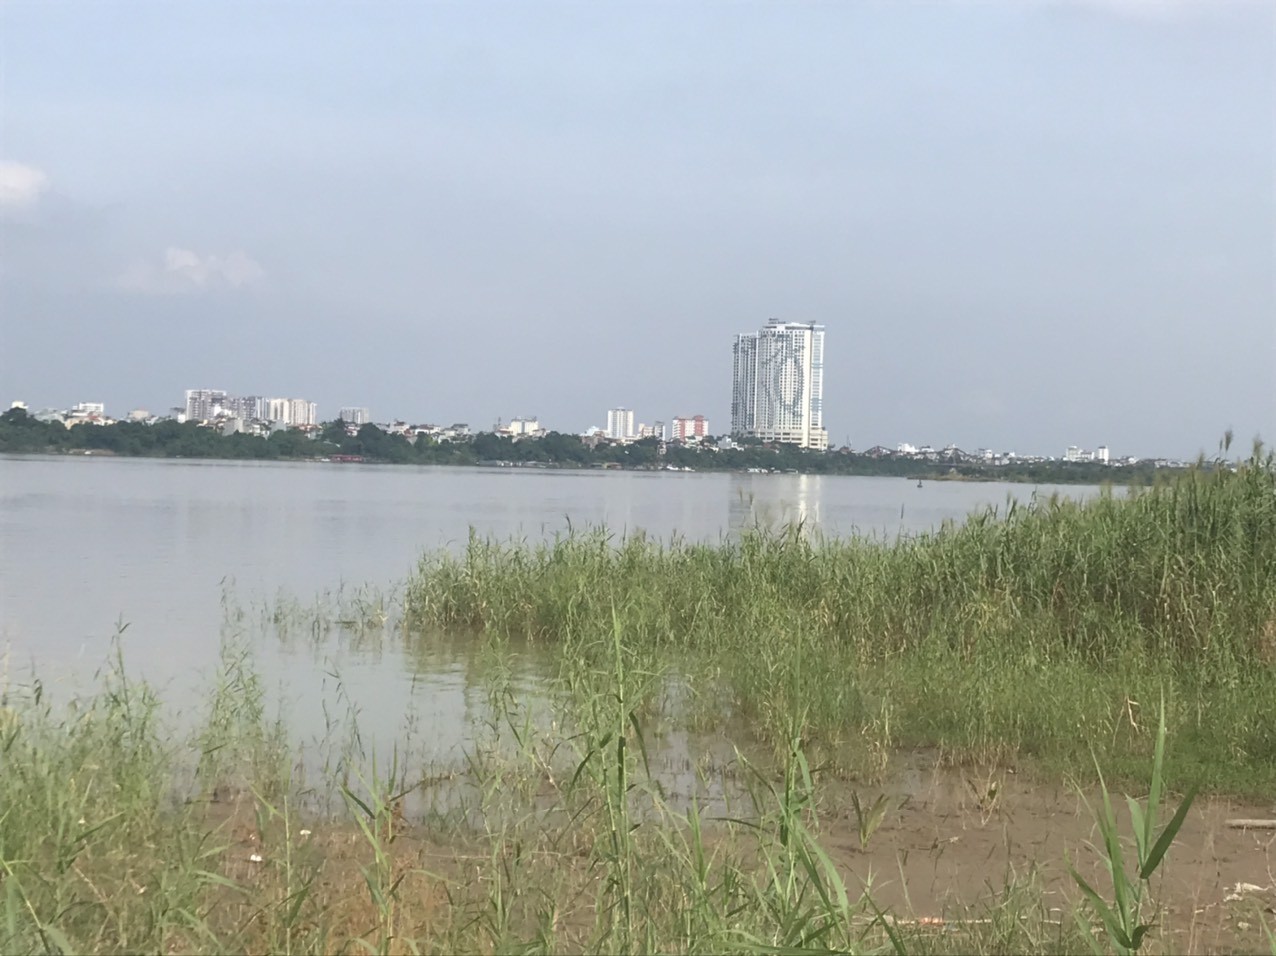 
Tương phản giữa 2 bên bờ sông Hồng: phía bên kia đã là đô thị với các công trình xây dựng, còn khu vực này vẫn bị bỏ quên
